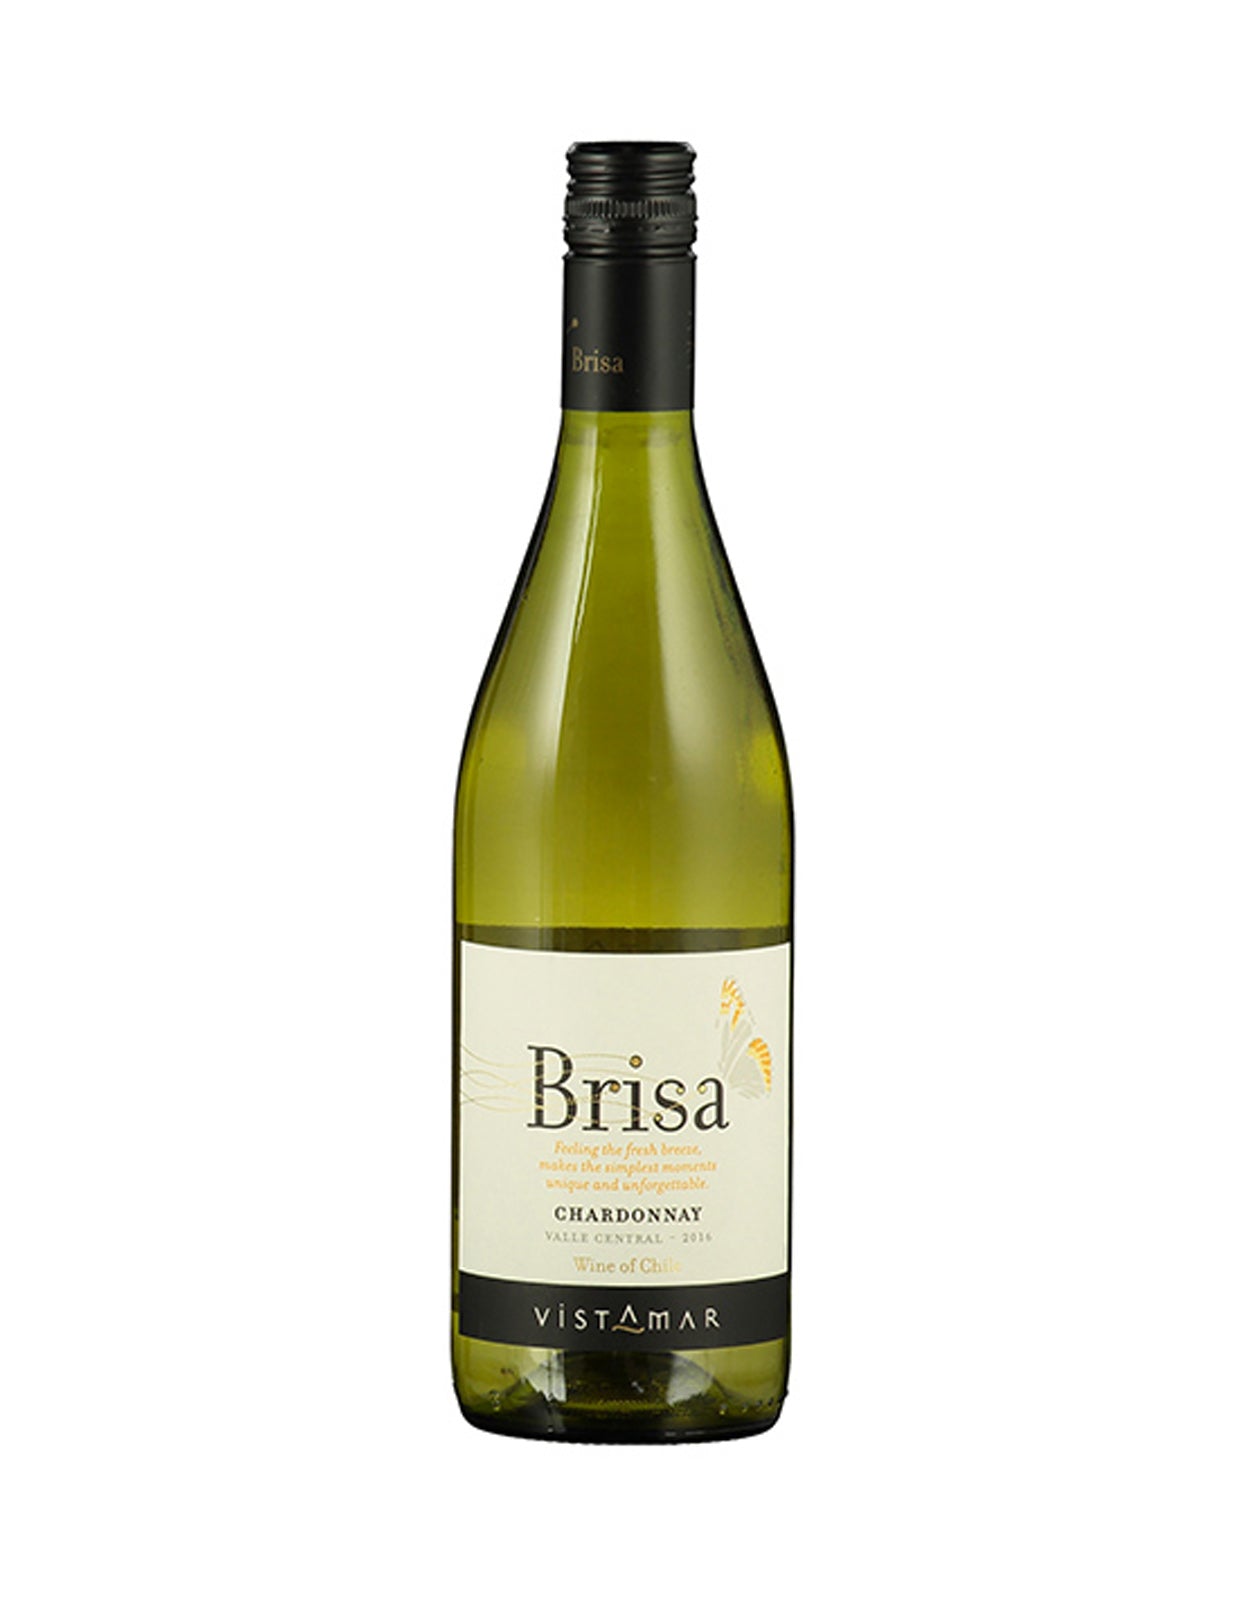 Vistamar La Brisa Chardonnay